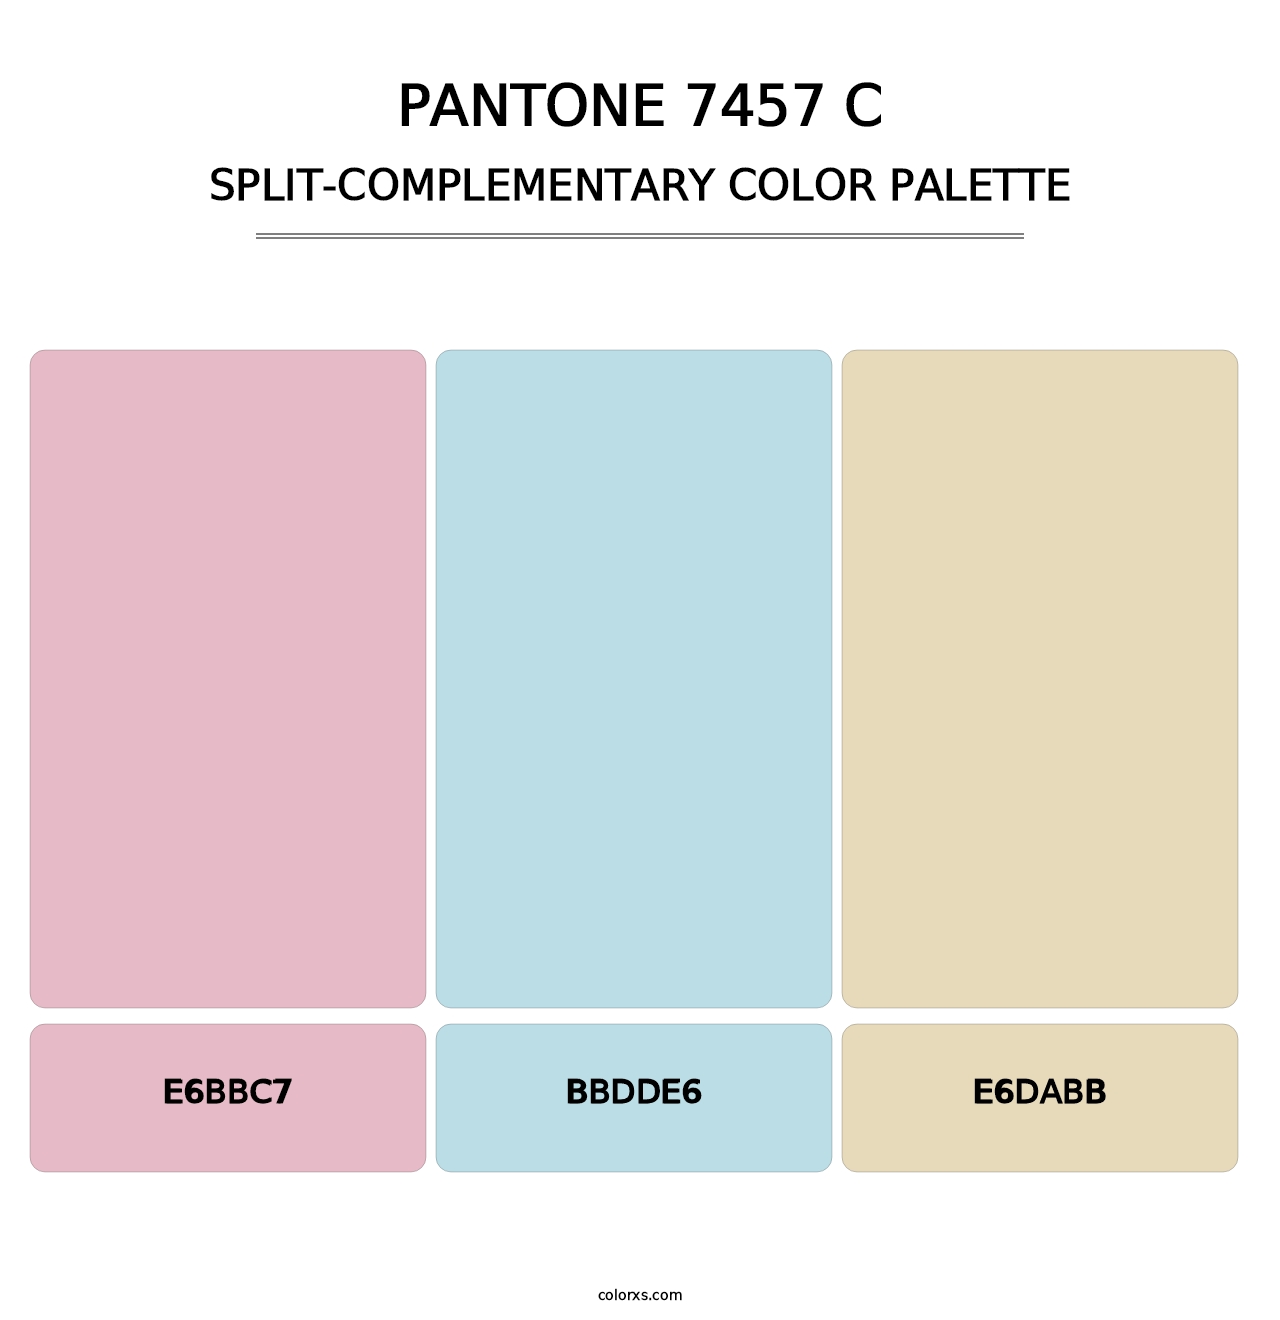 PANTONE 7457 C - Split-Complementary Color Palette